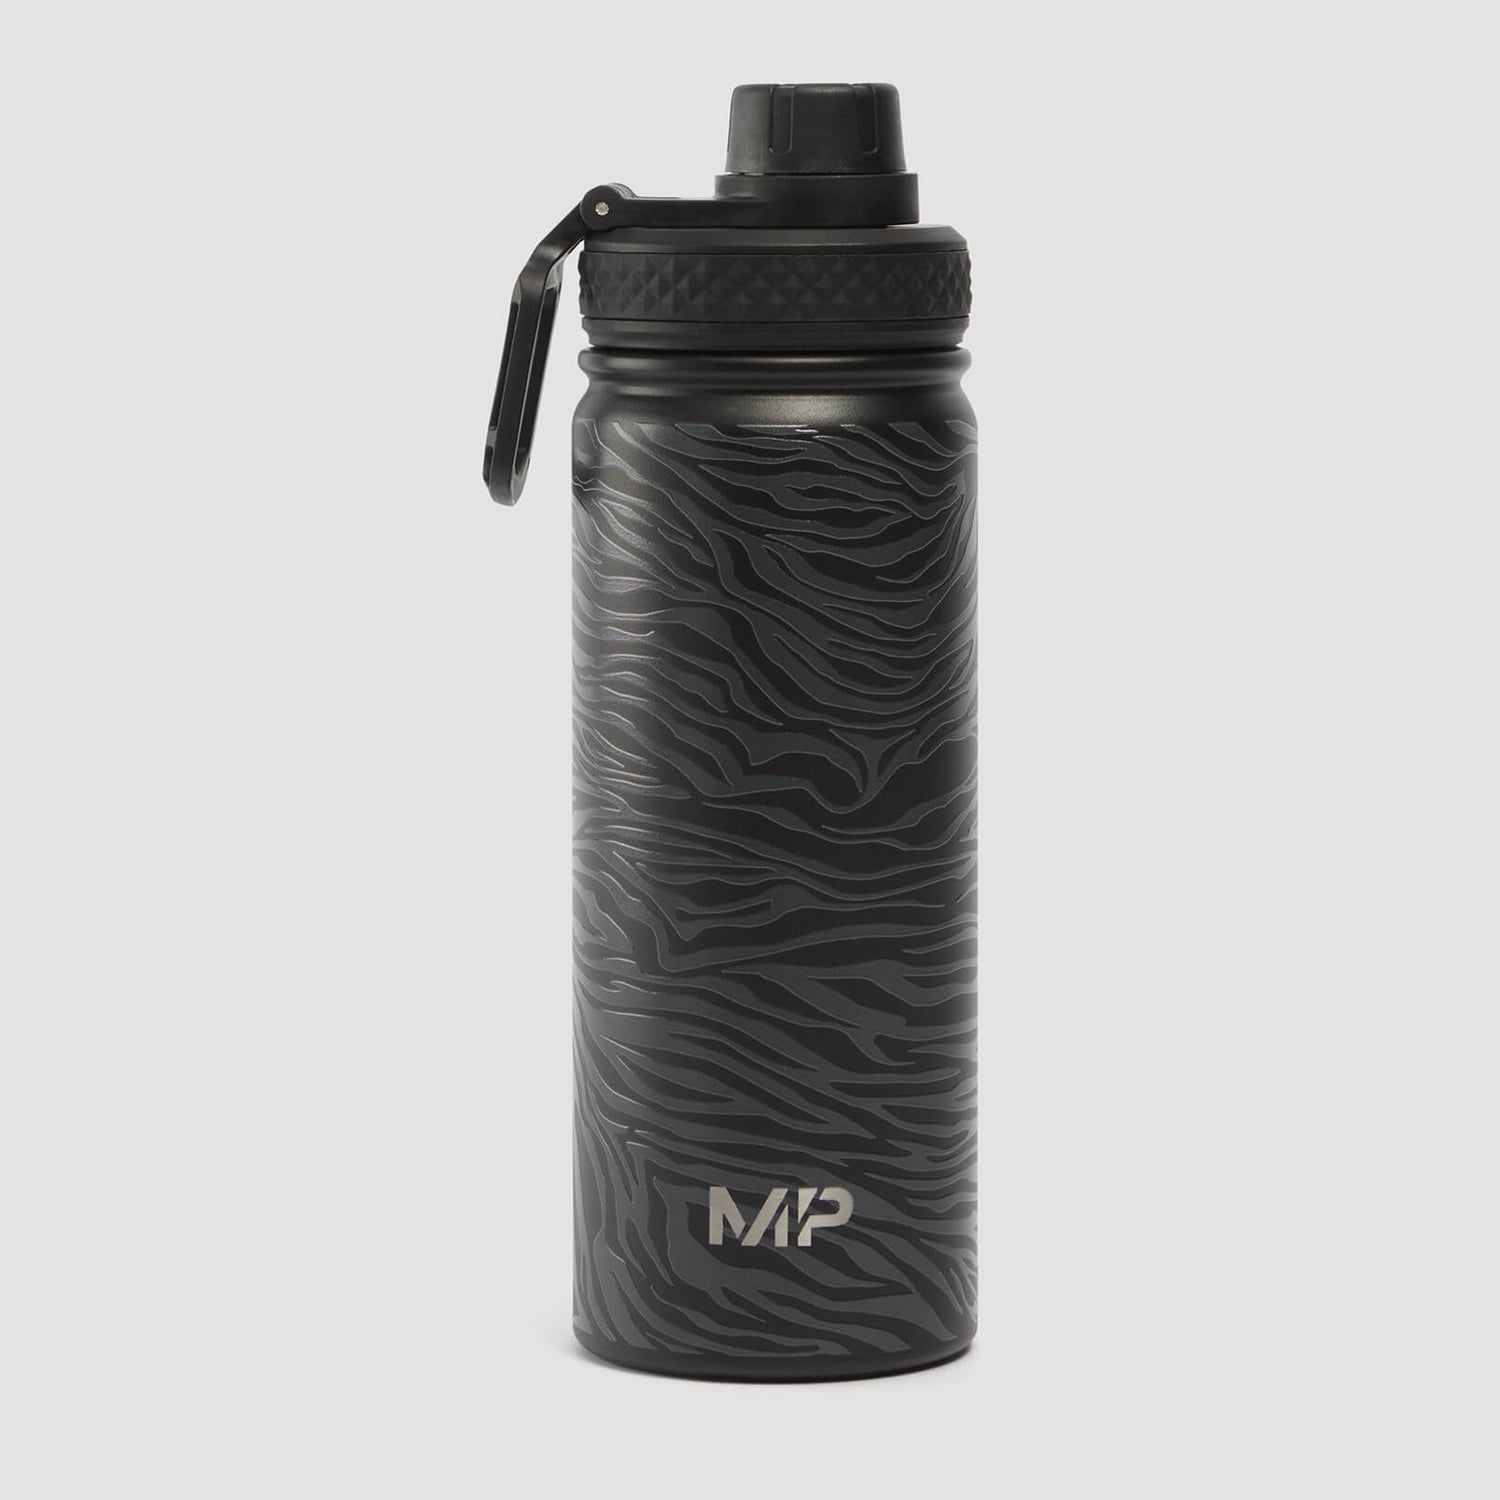 Kovová fľaša na vodu MP so zebrou potlačou – čierna/sivá – 500 ml